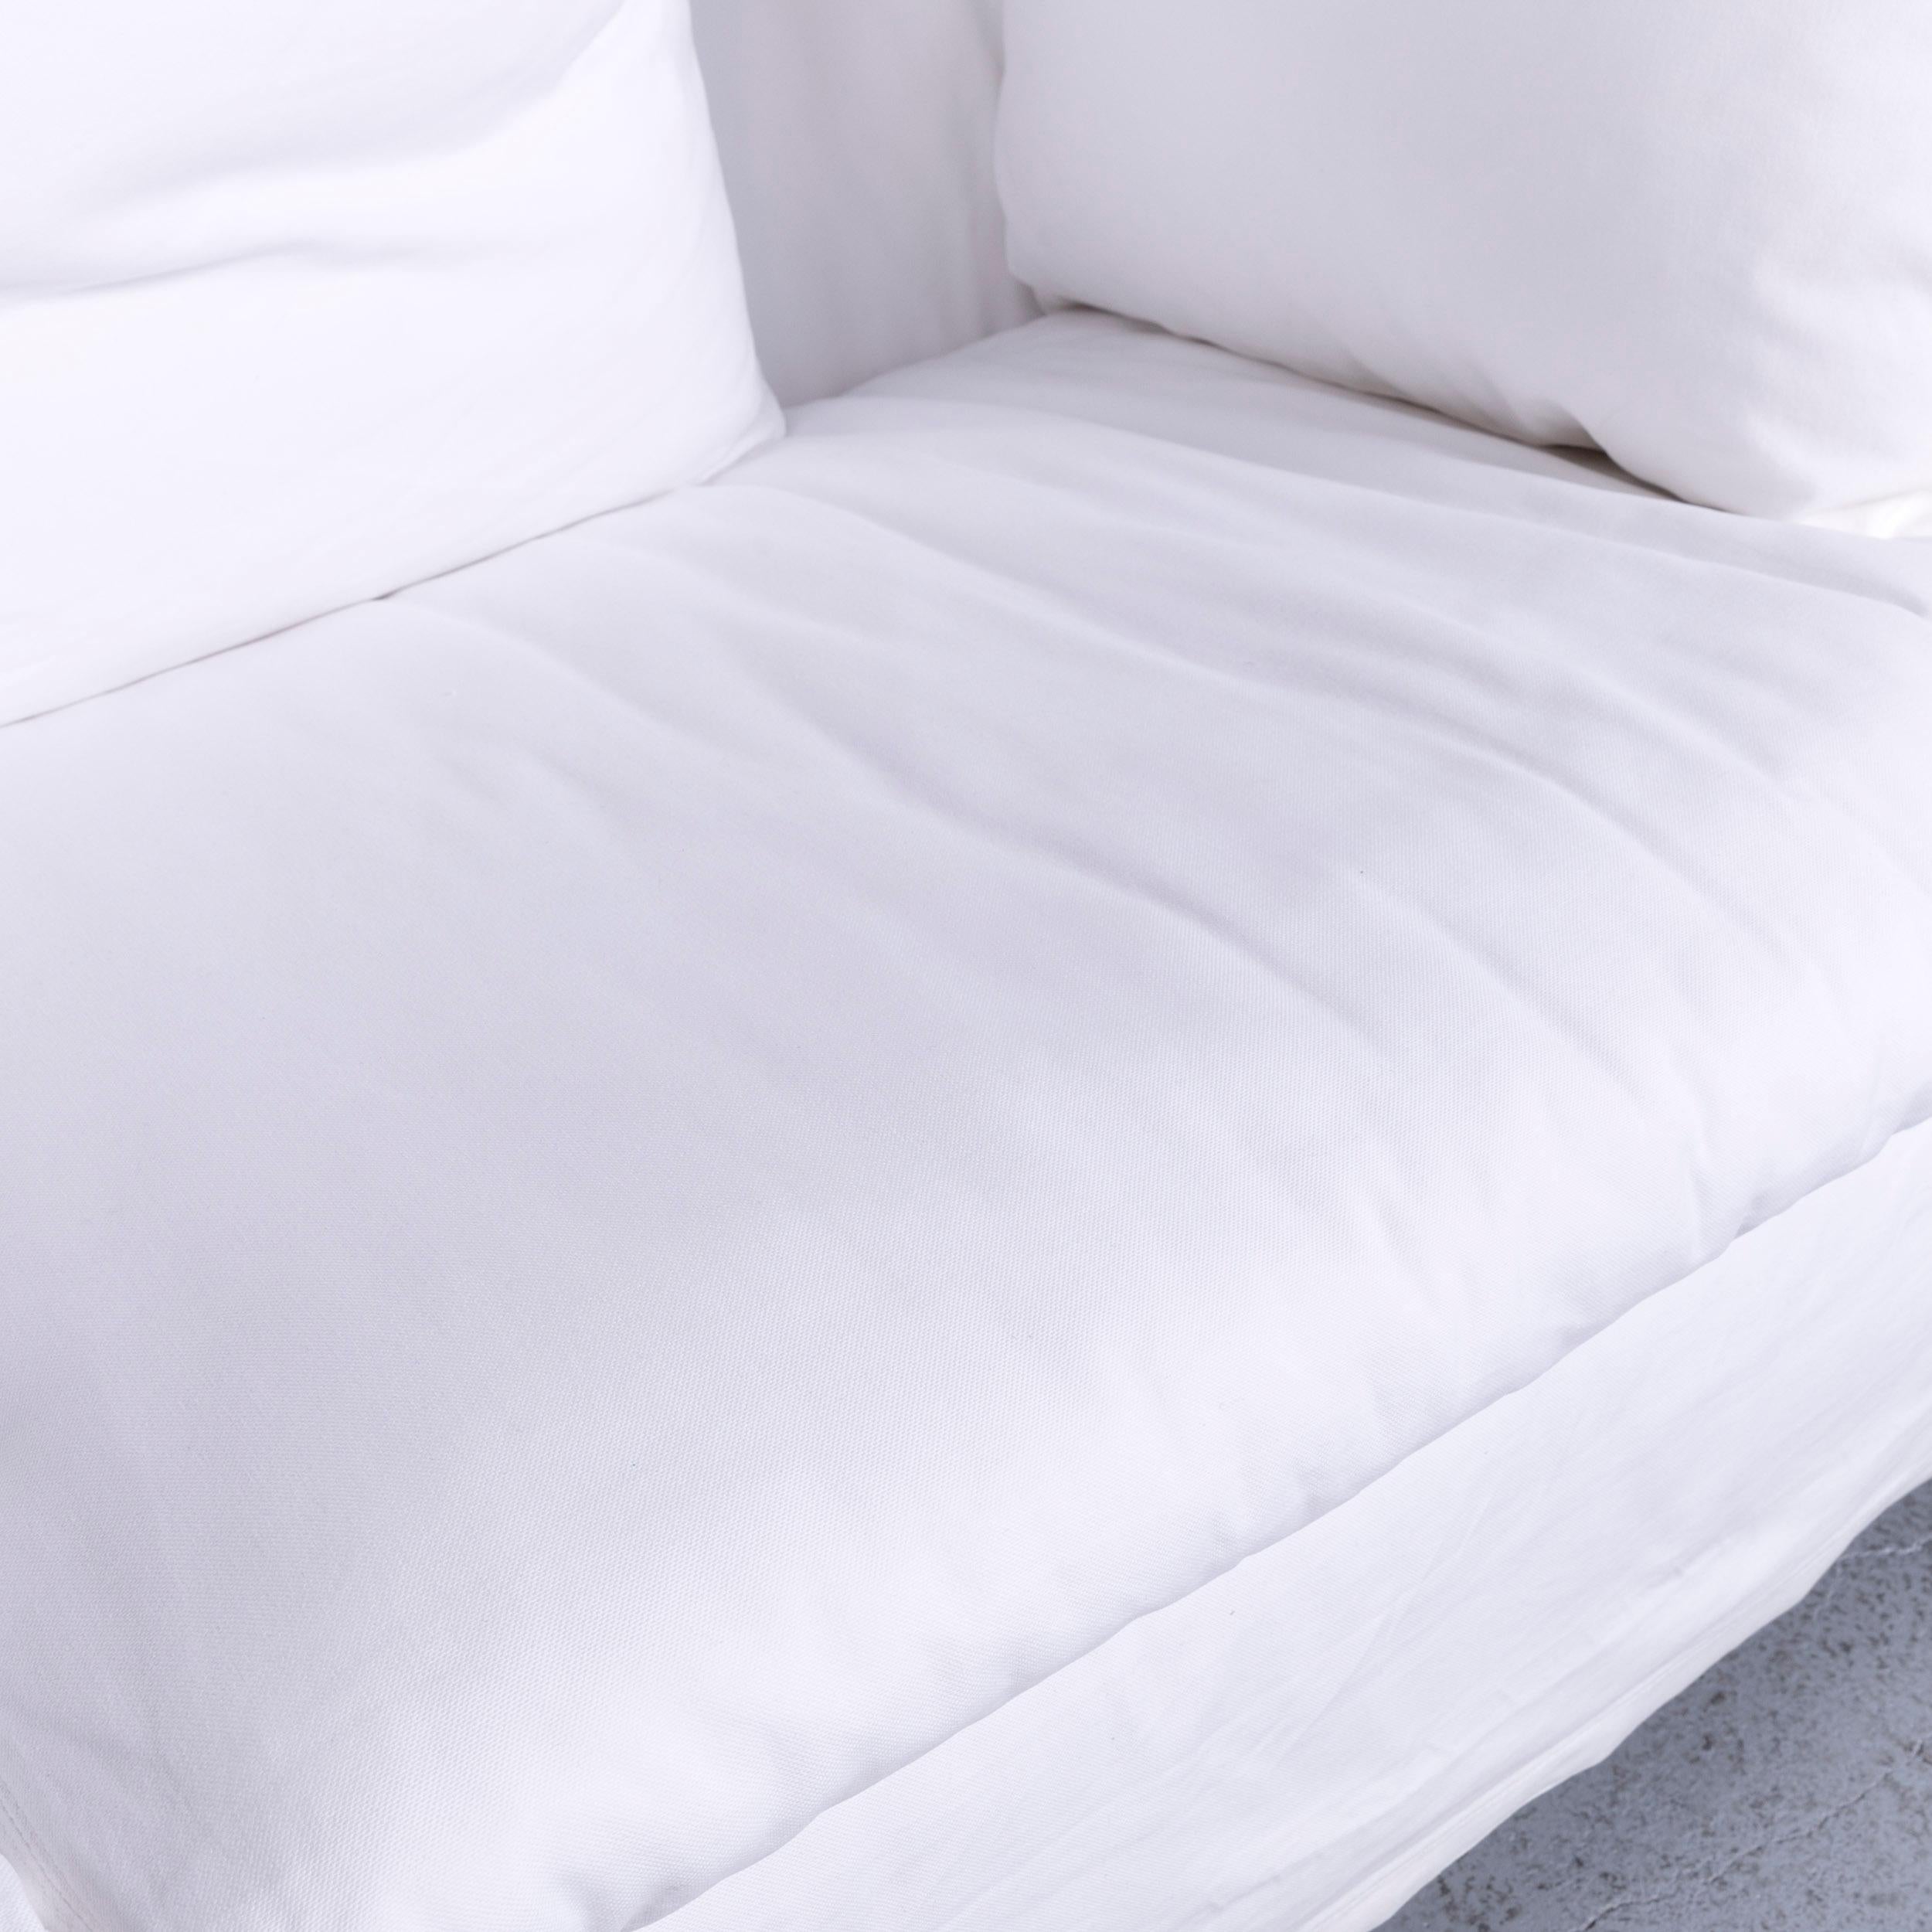 Flexform Poggiolungo Designer Fabric Sofa White Couch In Excellent Condition For Sale In Cologne, DE